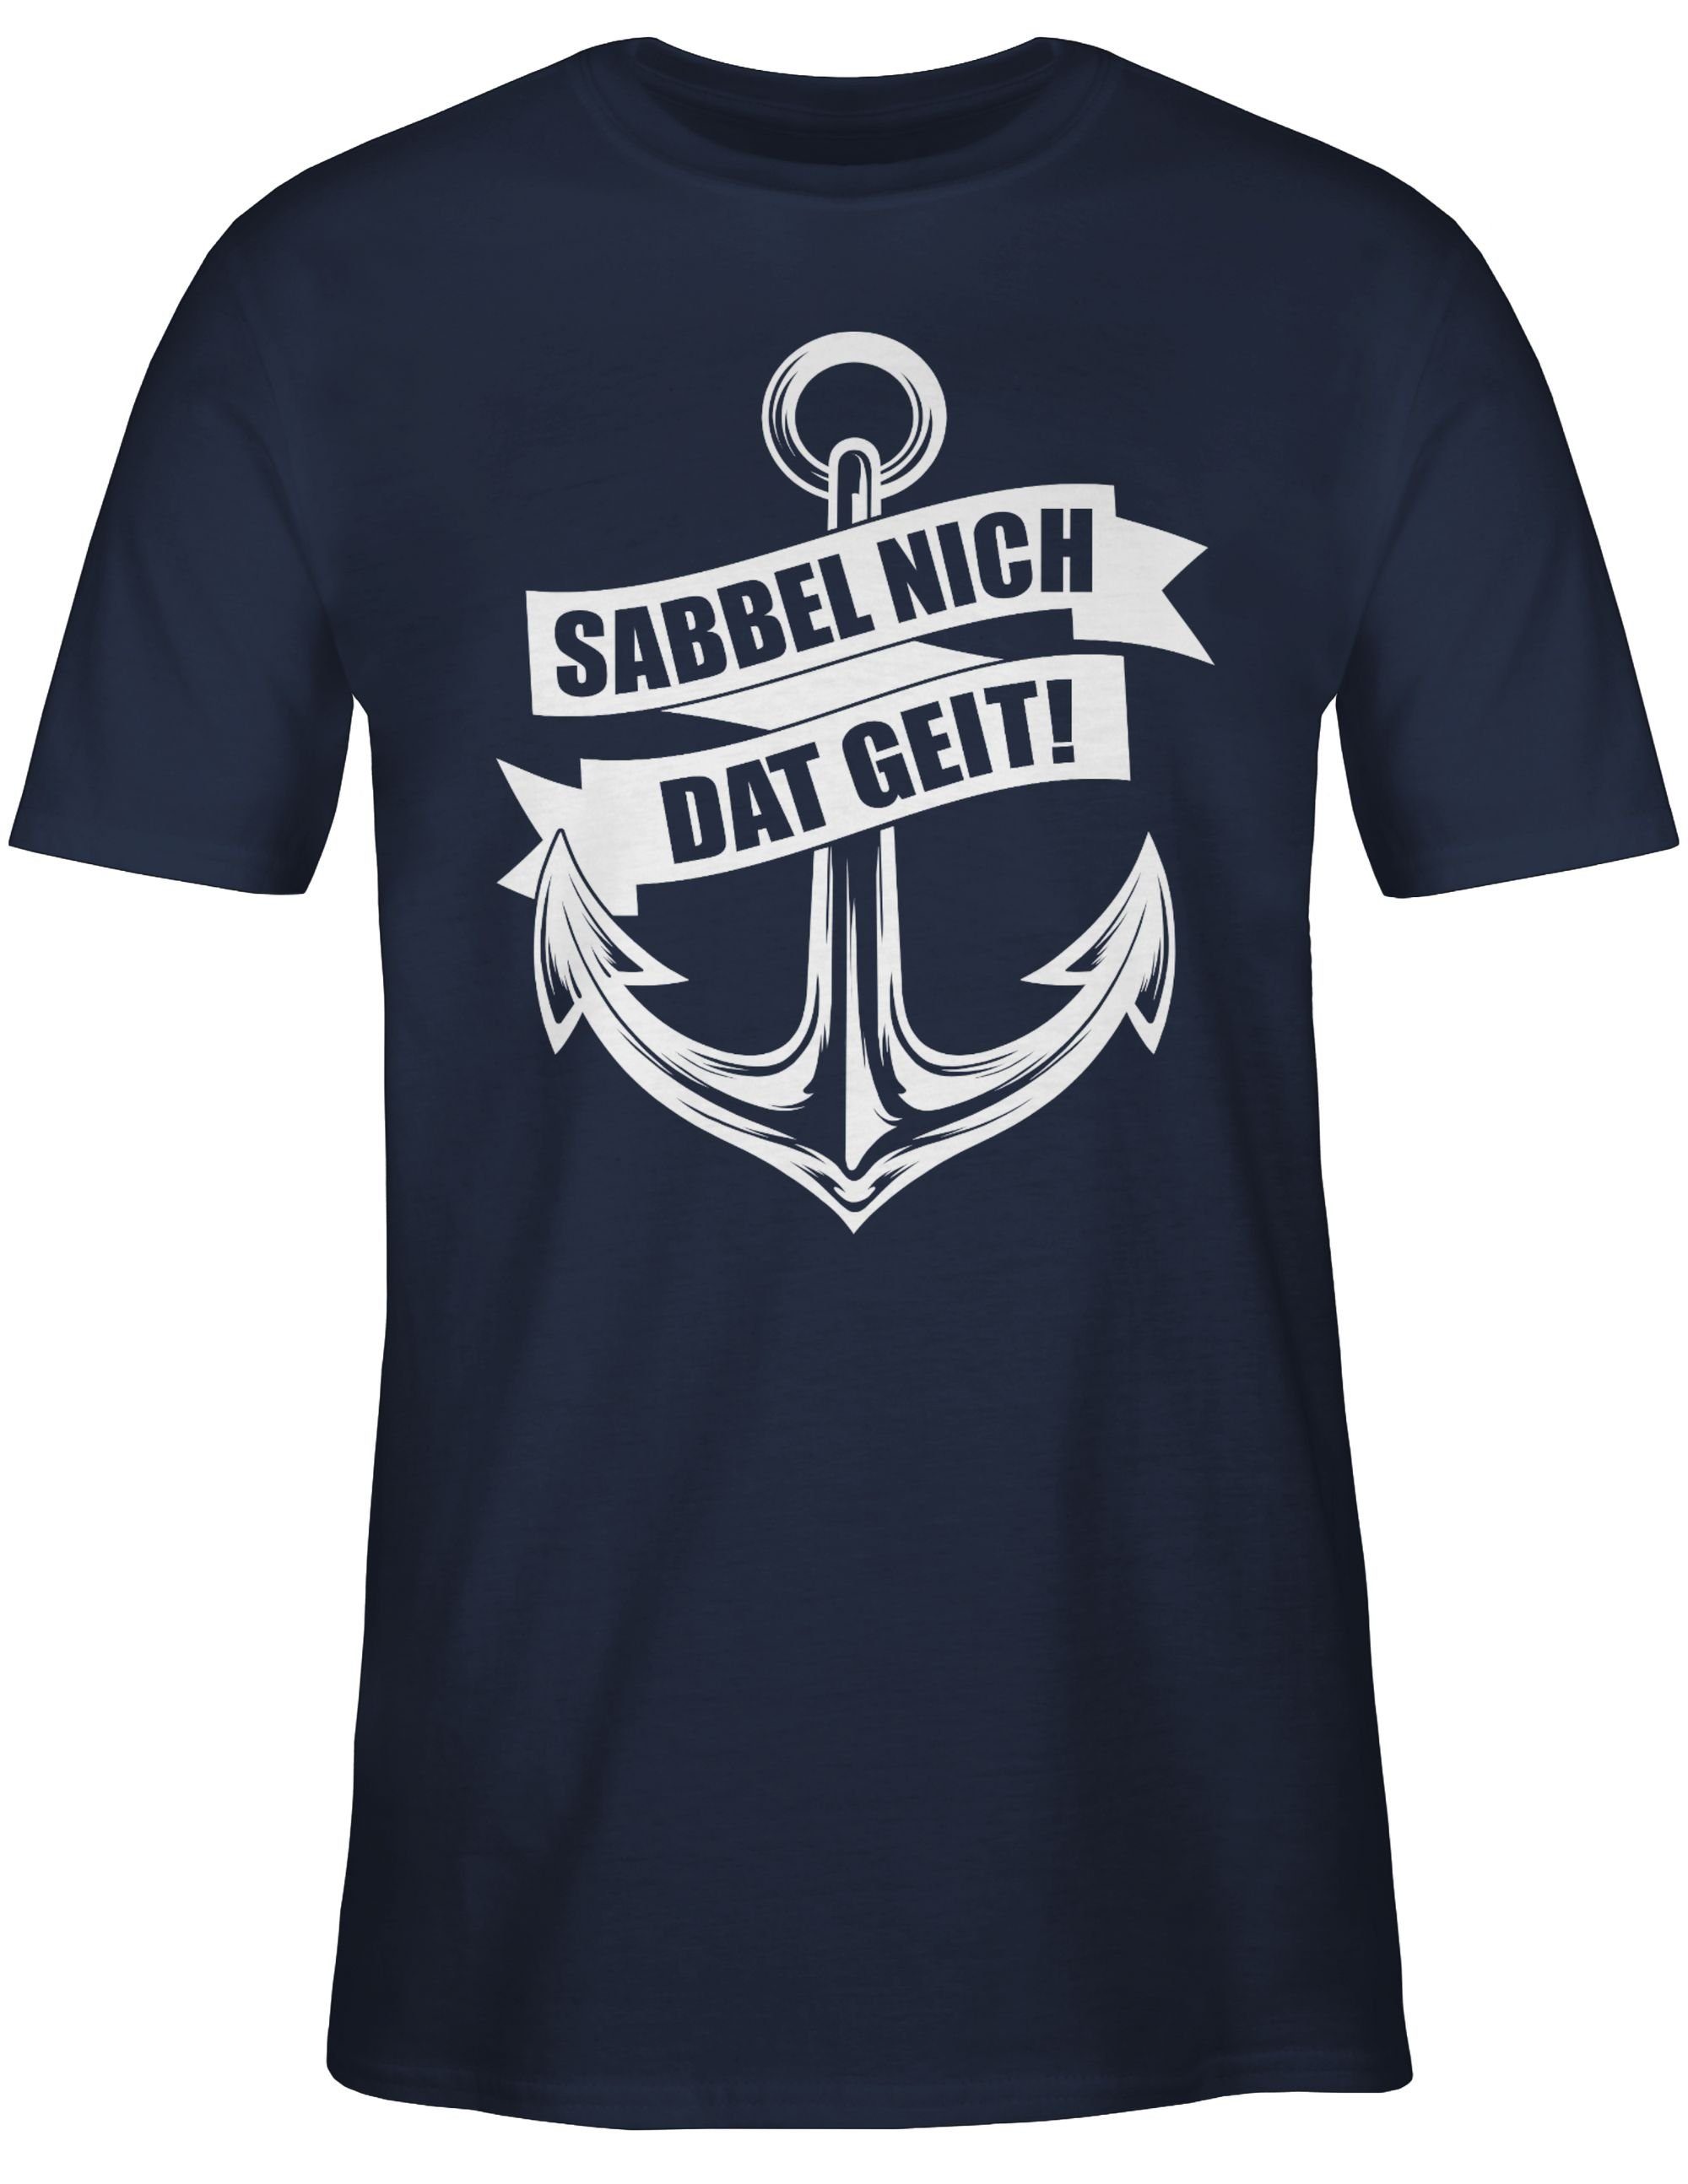 Sprüche nich Navy weiß T-Shirt Shirtracer Statement geit! dat Blau 02 Sabbel -